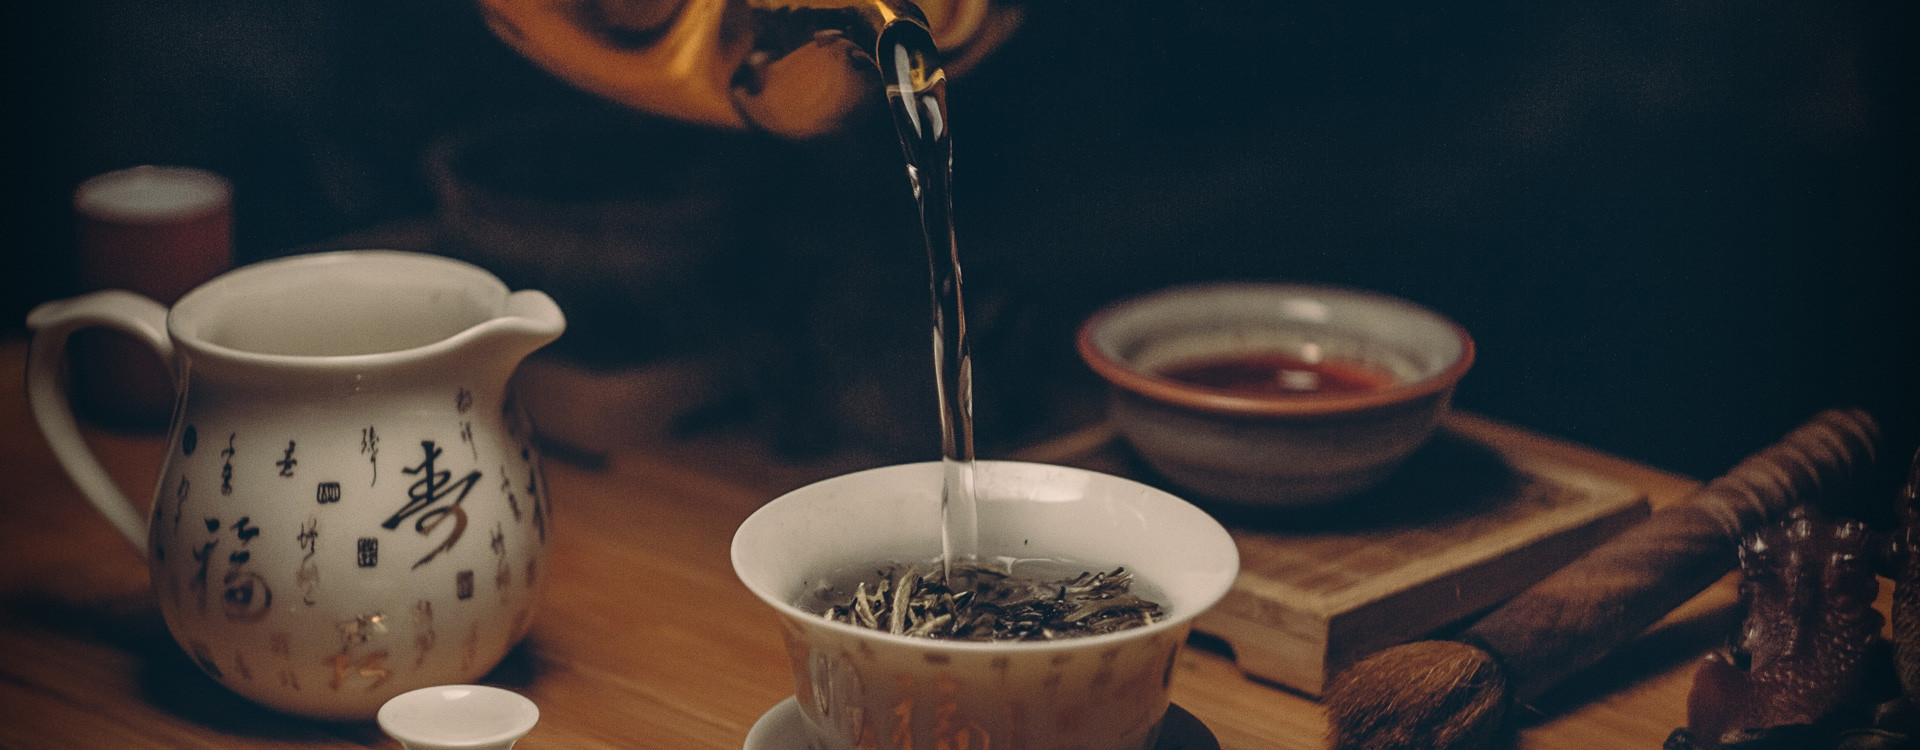 Le thé blanc est-il riche en caféine (théine) ? - Au Paradis du Thé